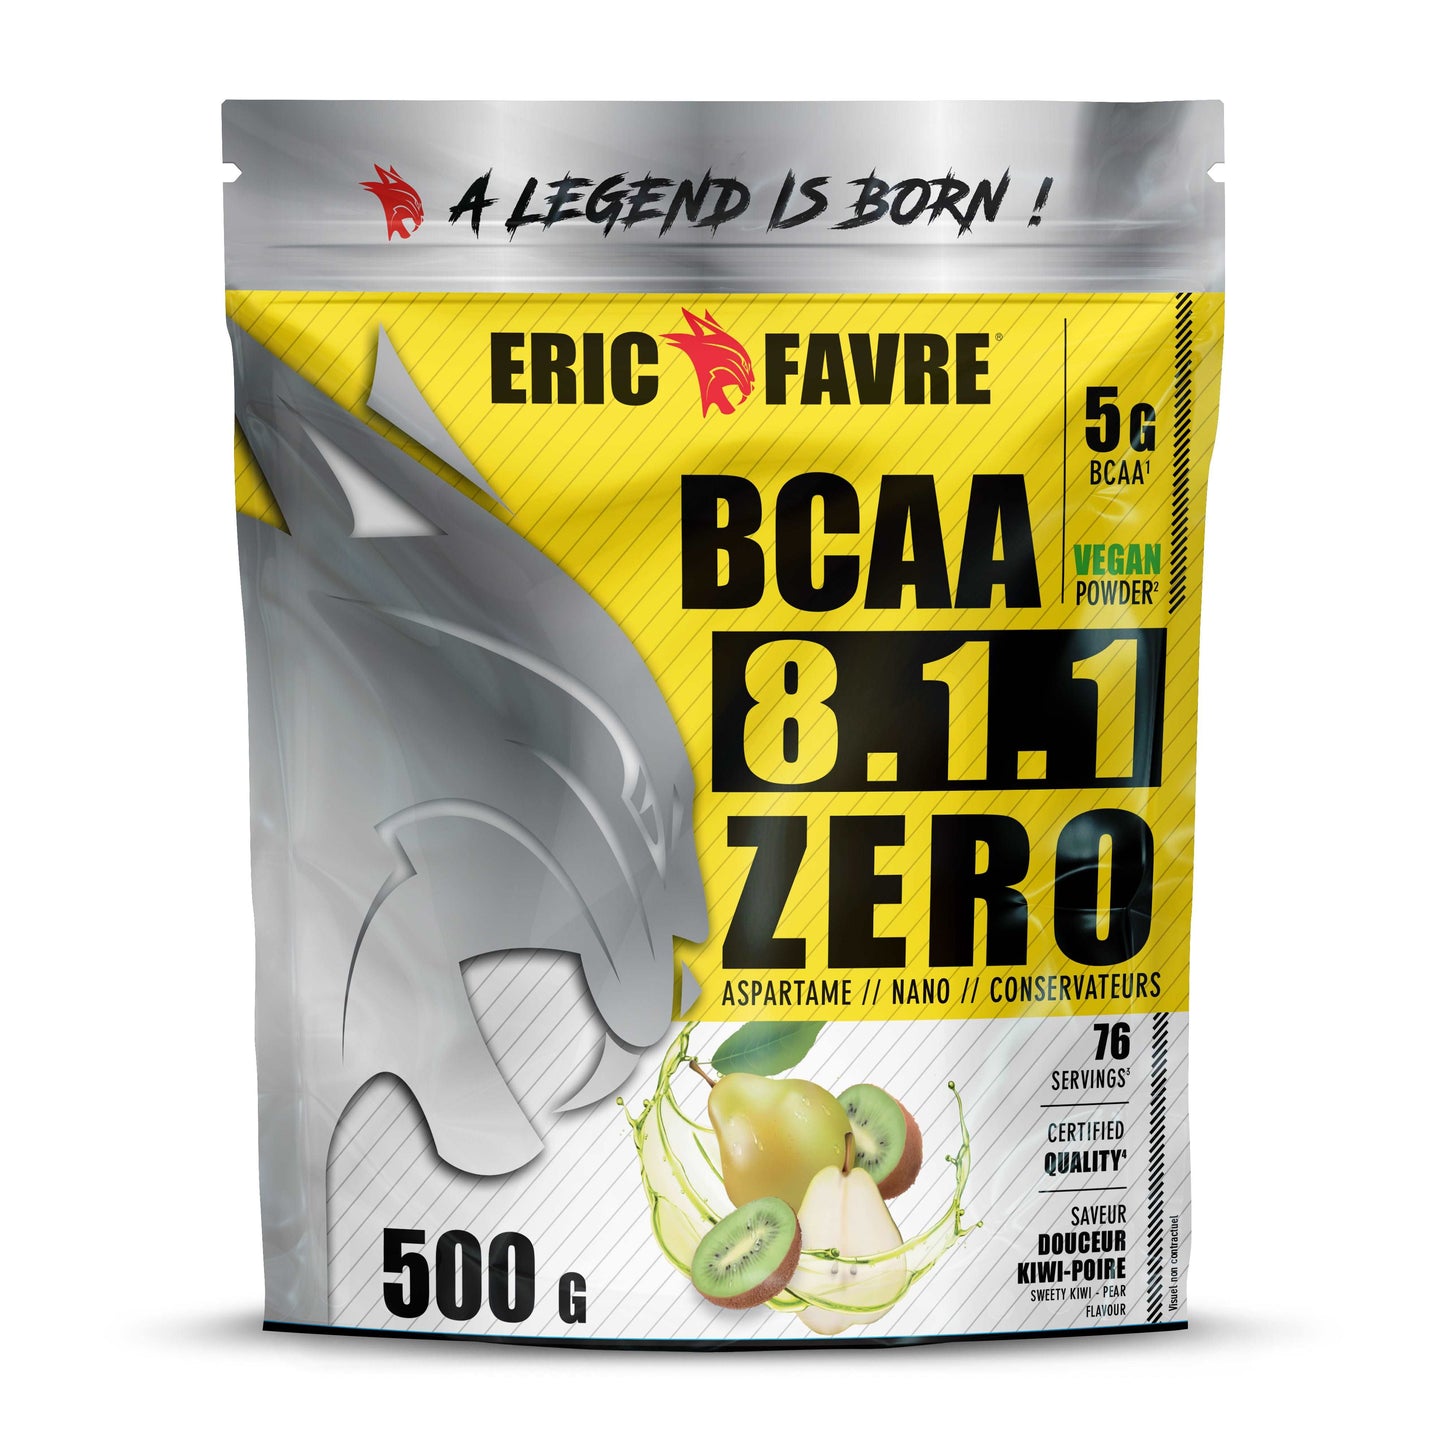 BCAA 8.1.1 Zero 500g / Kiwi Poire - ERIC FAVRE - Market Fit